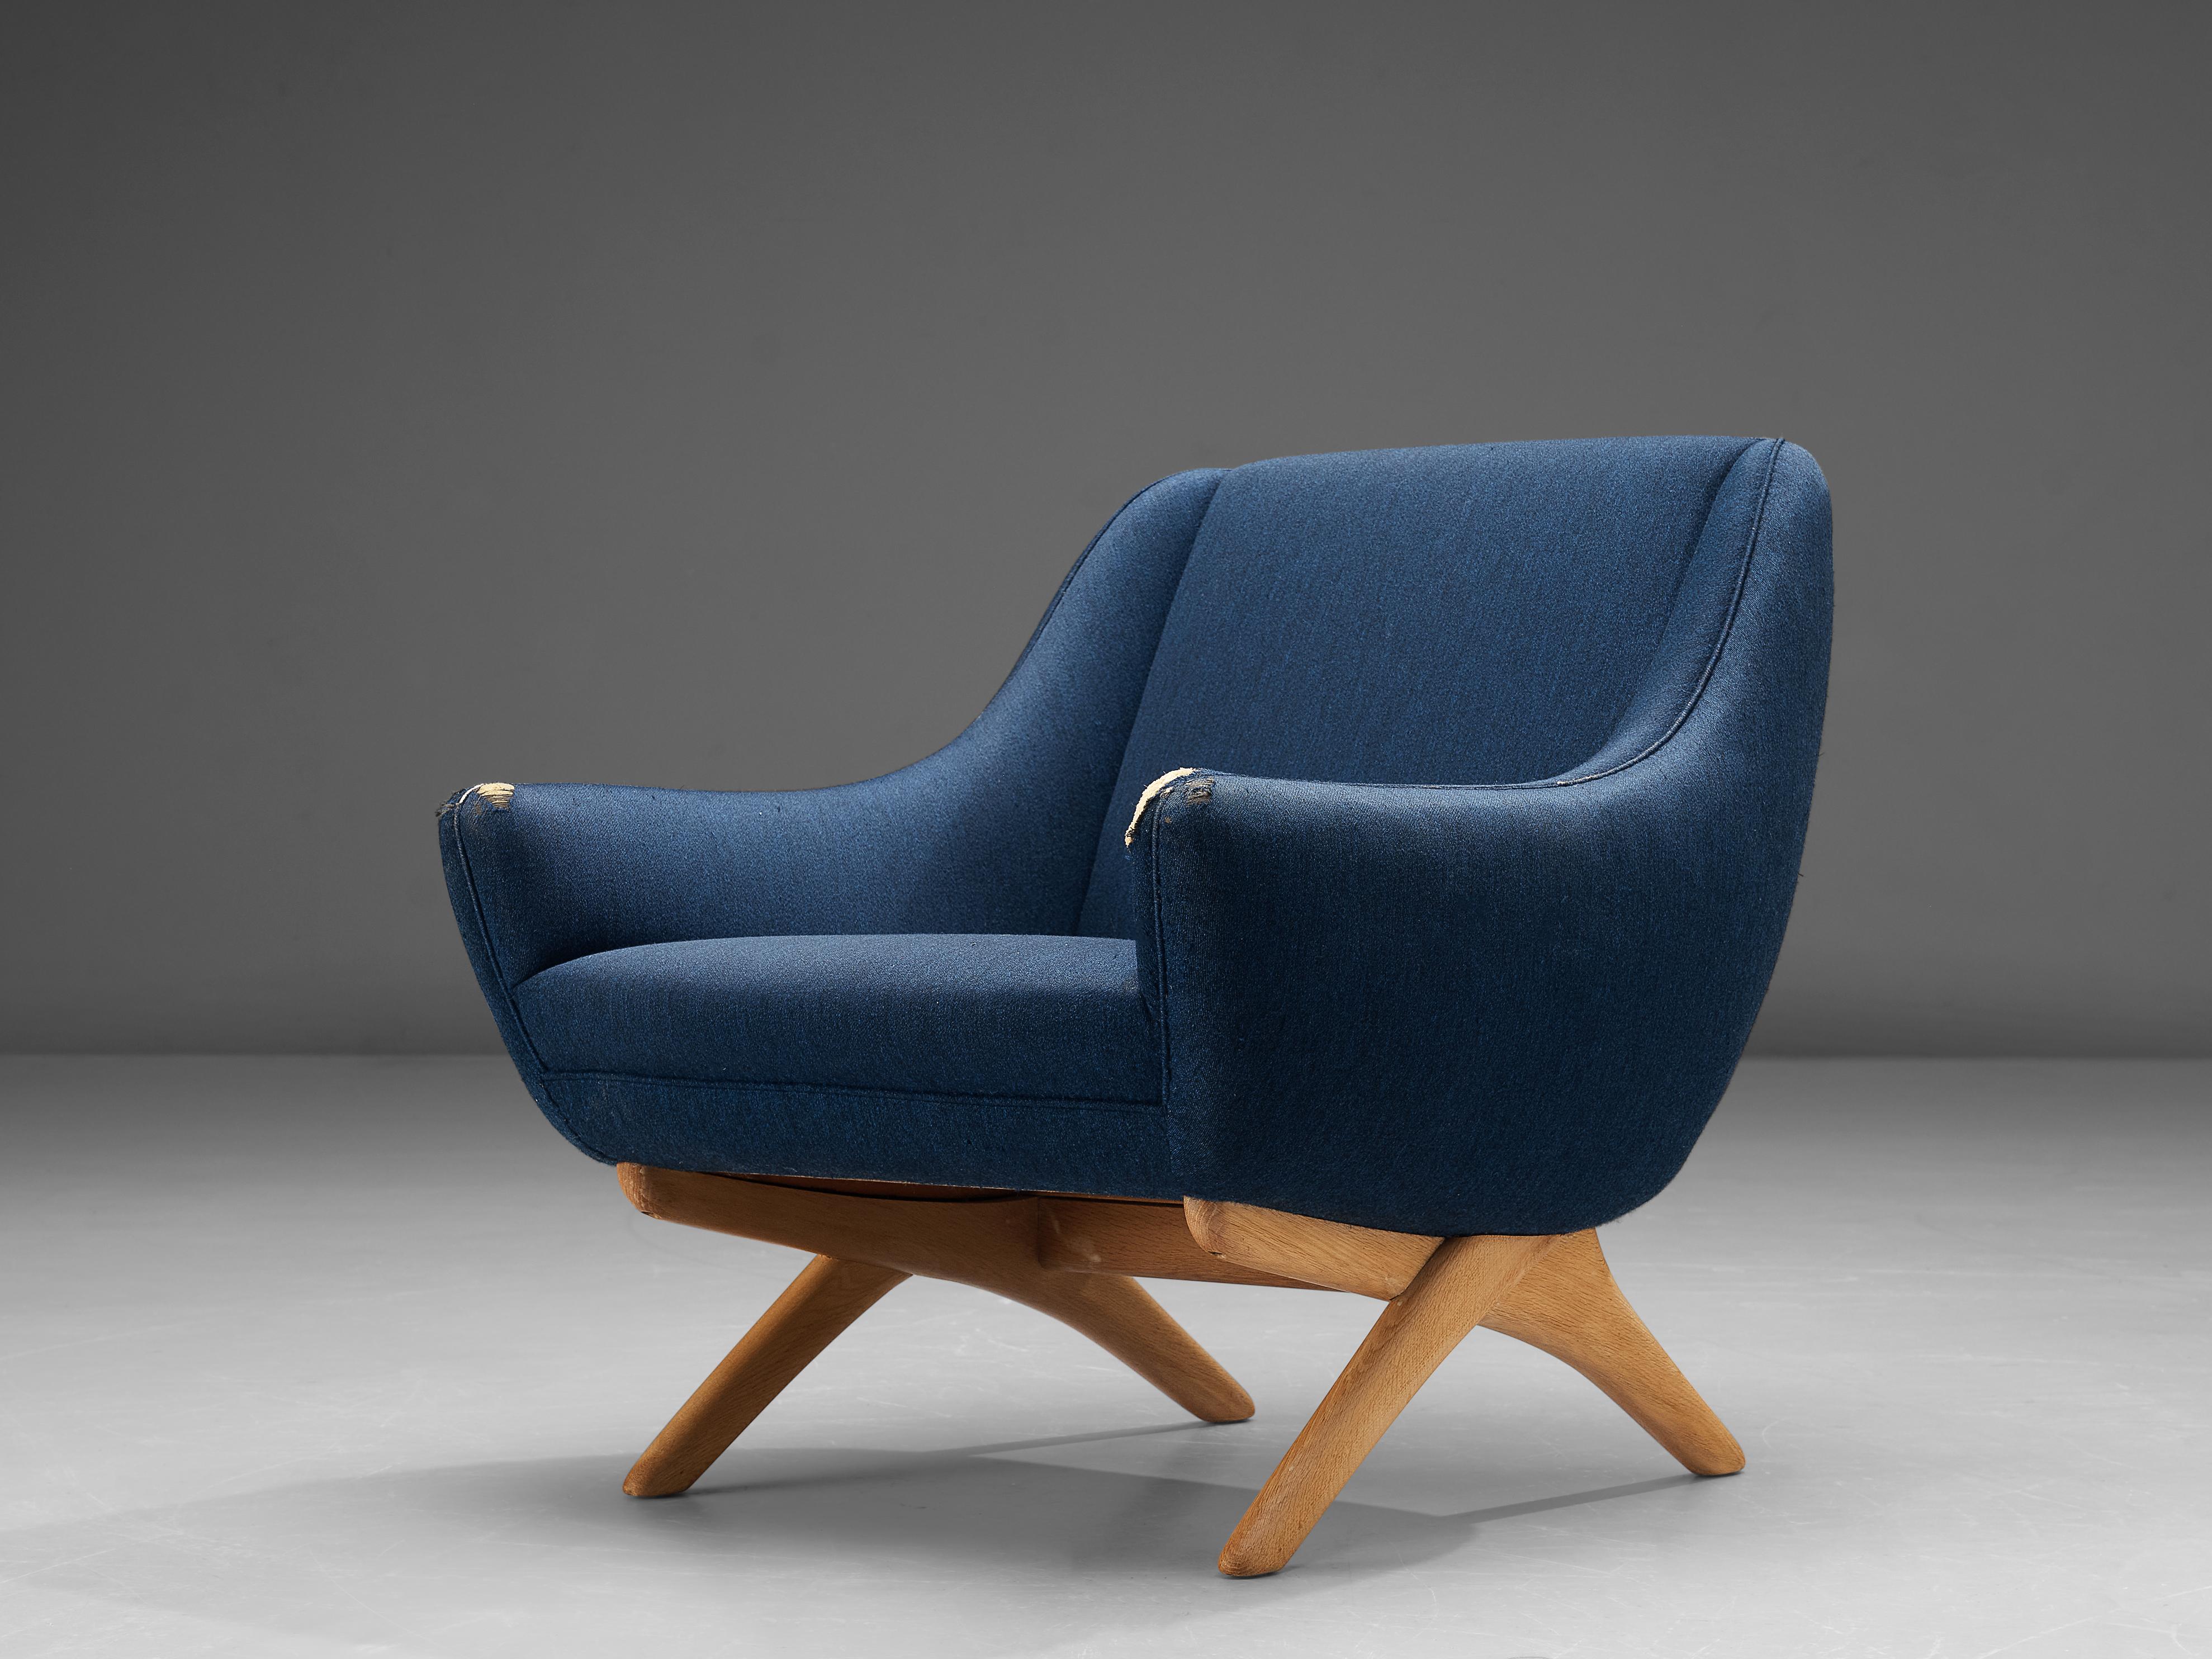 Illum Wikkelsø, chaise longue, tissu, teck, Danemark, années 1950

Chaise longue confortable du designer danois Illum Wikkelsø. La forme de la chaise est caractérisée par un dossier haut qui se prolonge par des accoudoirs bas et pointus. Une base